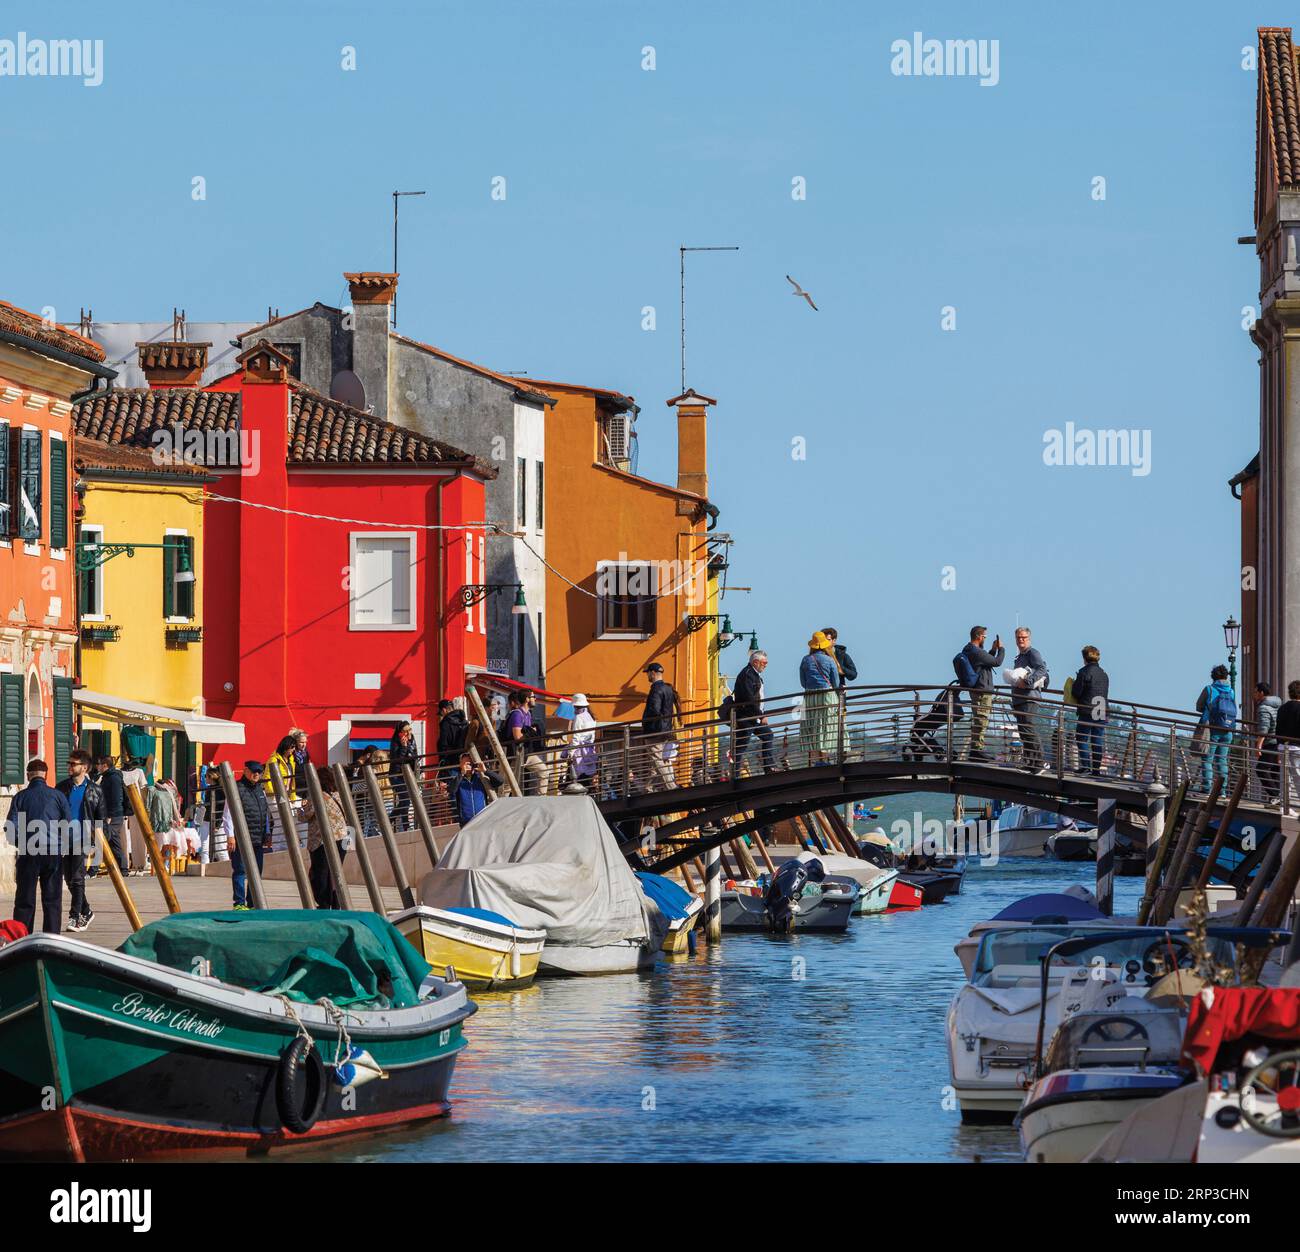 Isola di Burano nella laguna veneta, comune di Venezia, Italia. Case colorate e canale. Foto Stock